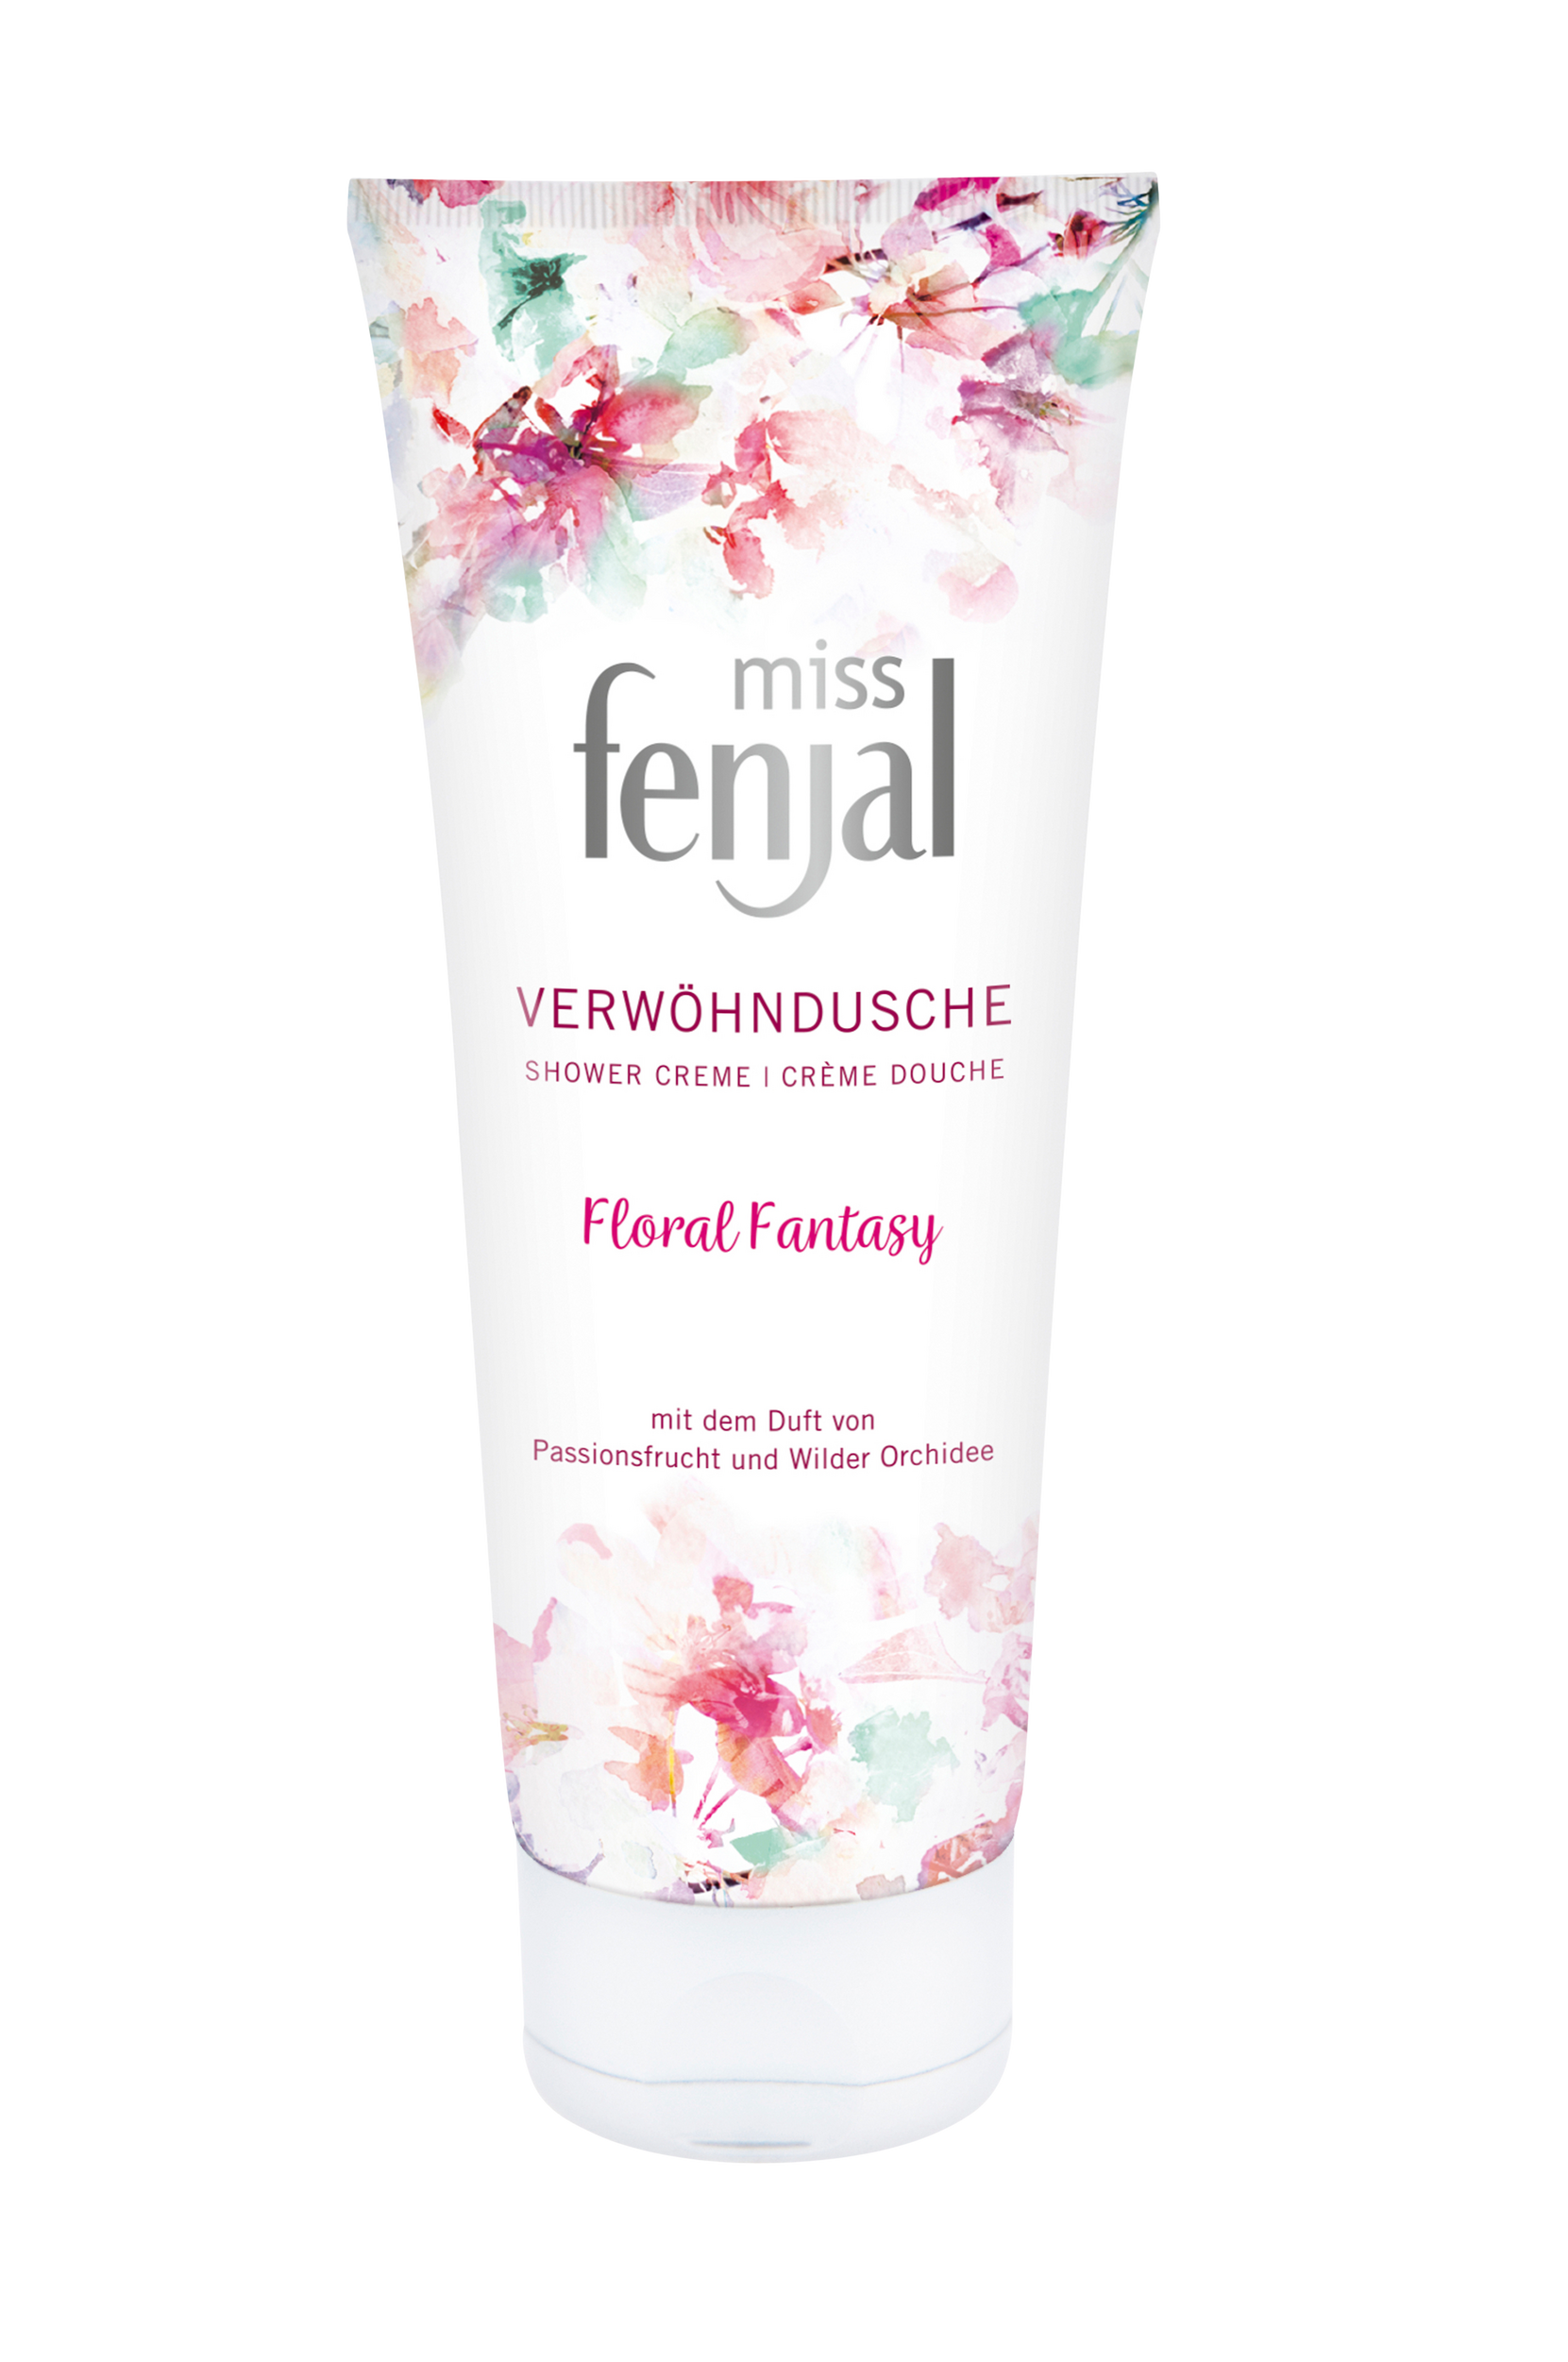 Miss Fenjal Shower Creme Floral Fantasy 200 ml, Fenjal